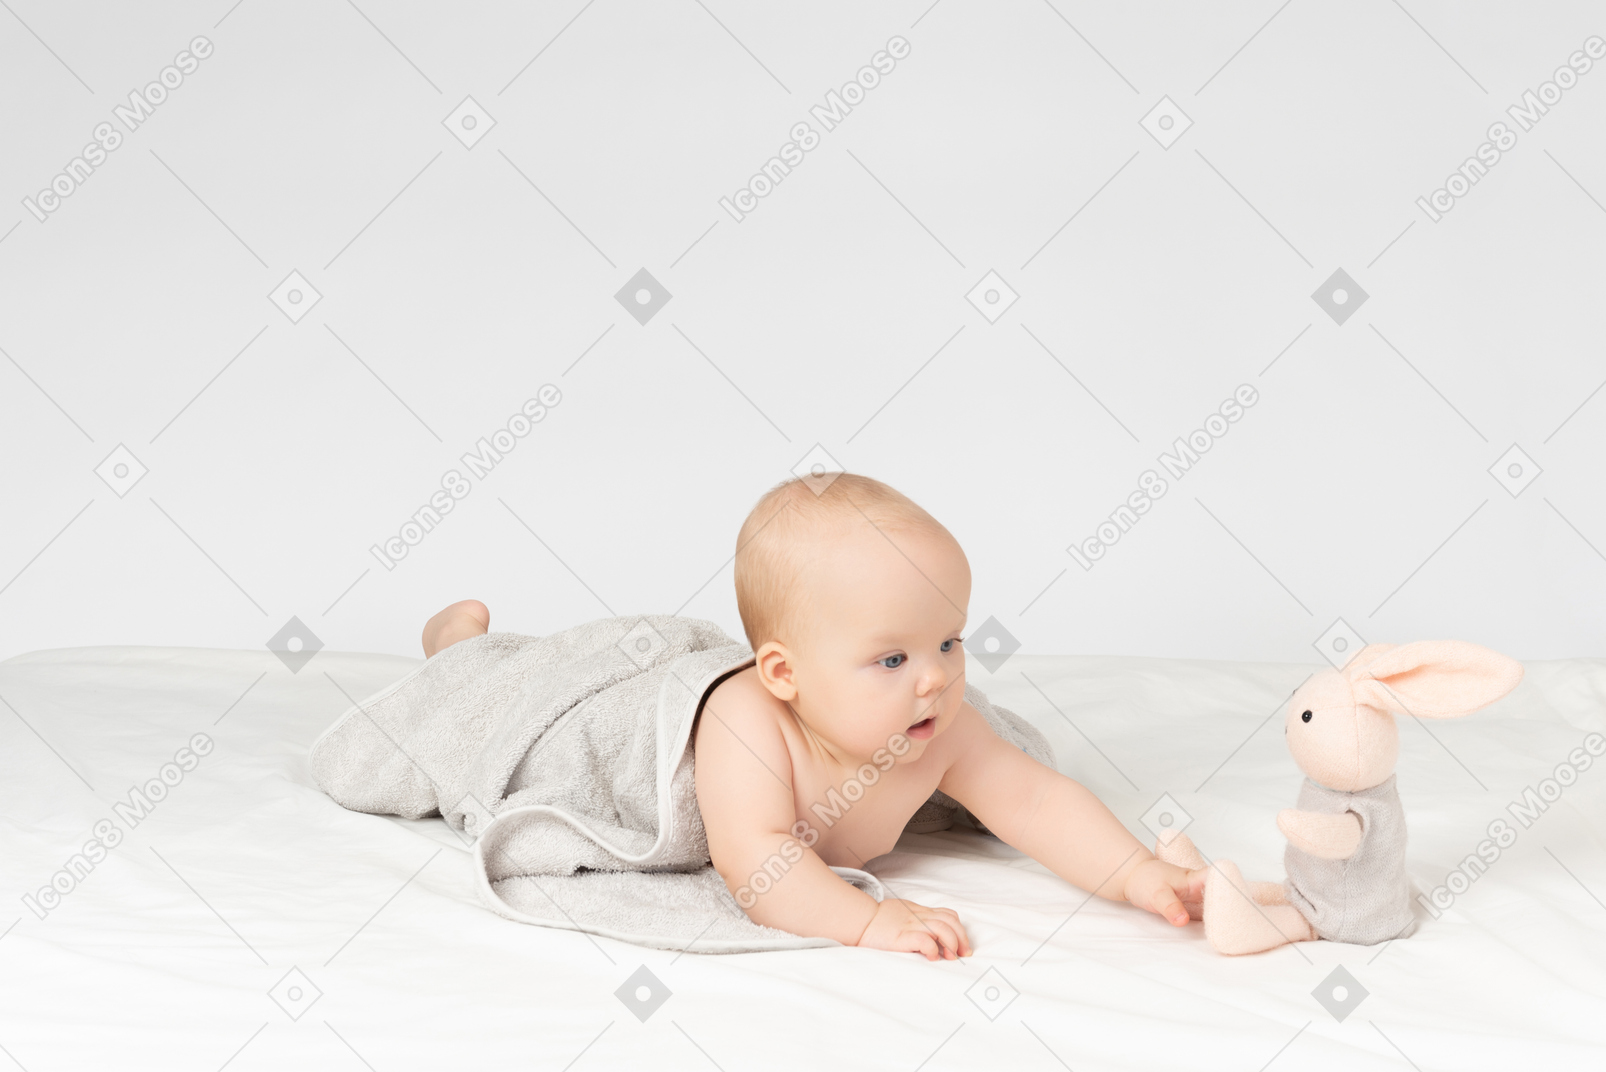 Девочка в полотенце и смотрит на мягкую игрушку